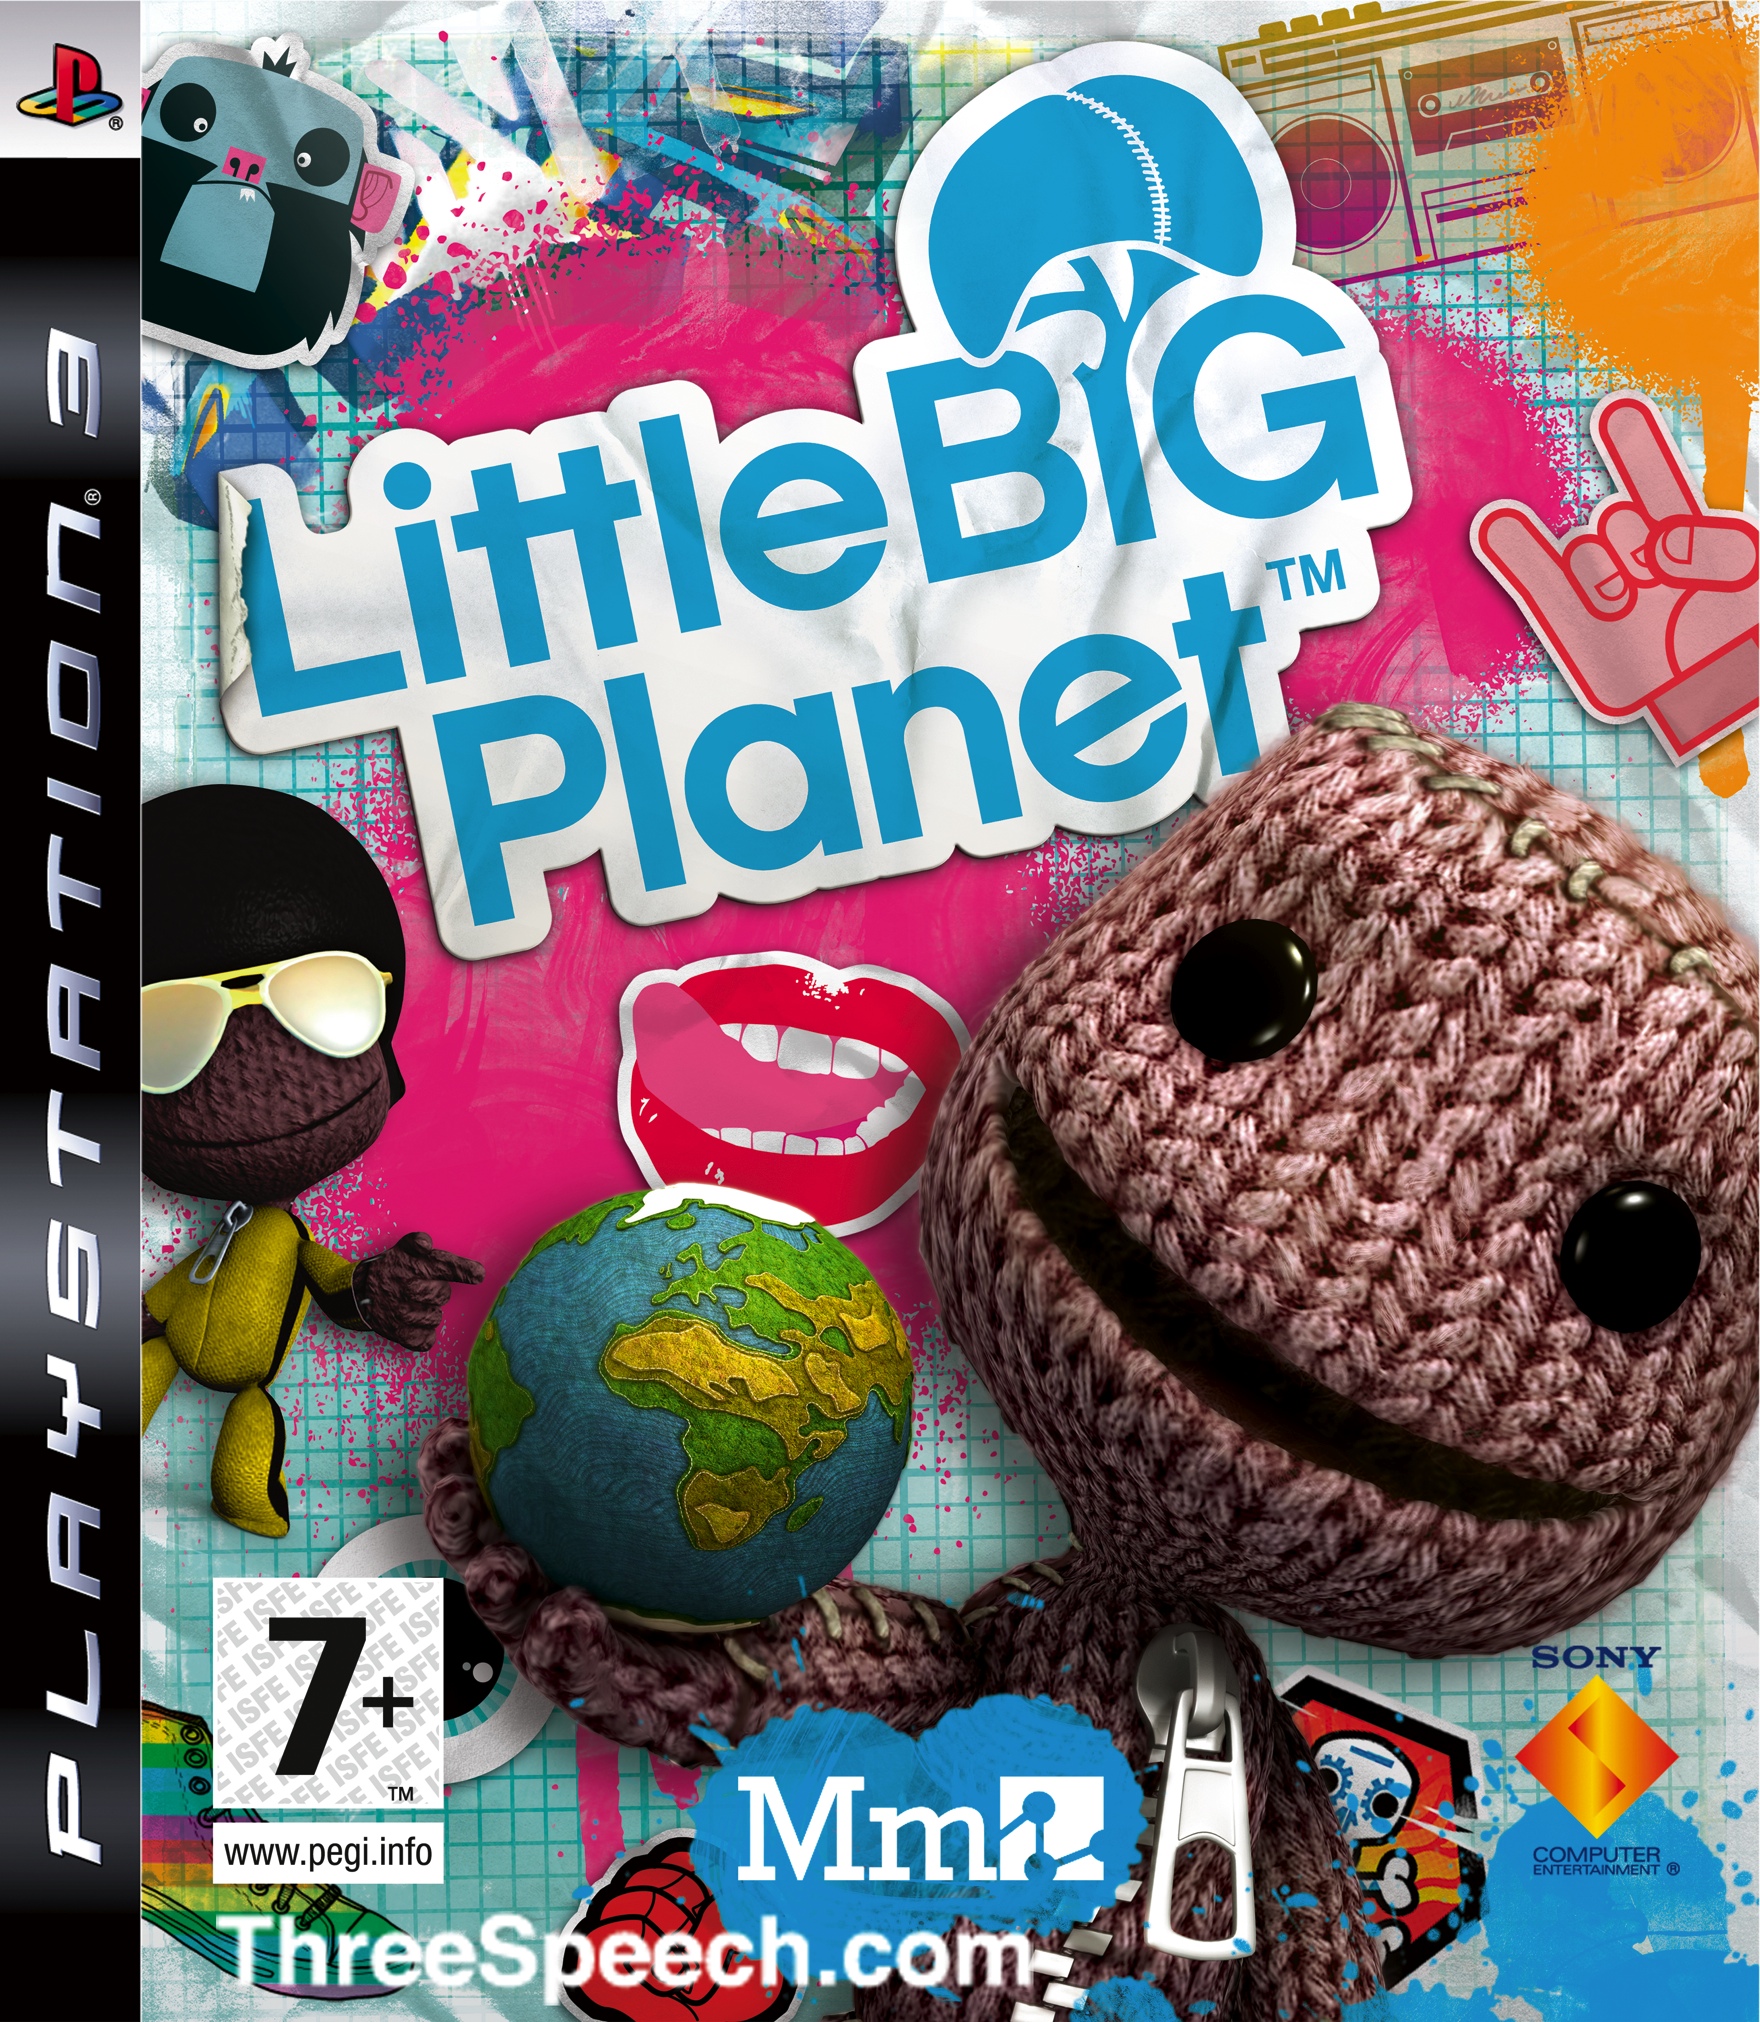 jaquette du jeu vidéo Little Big Planet